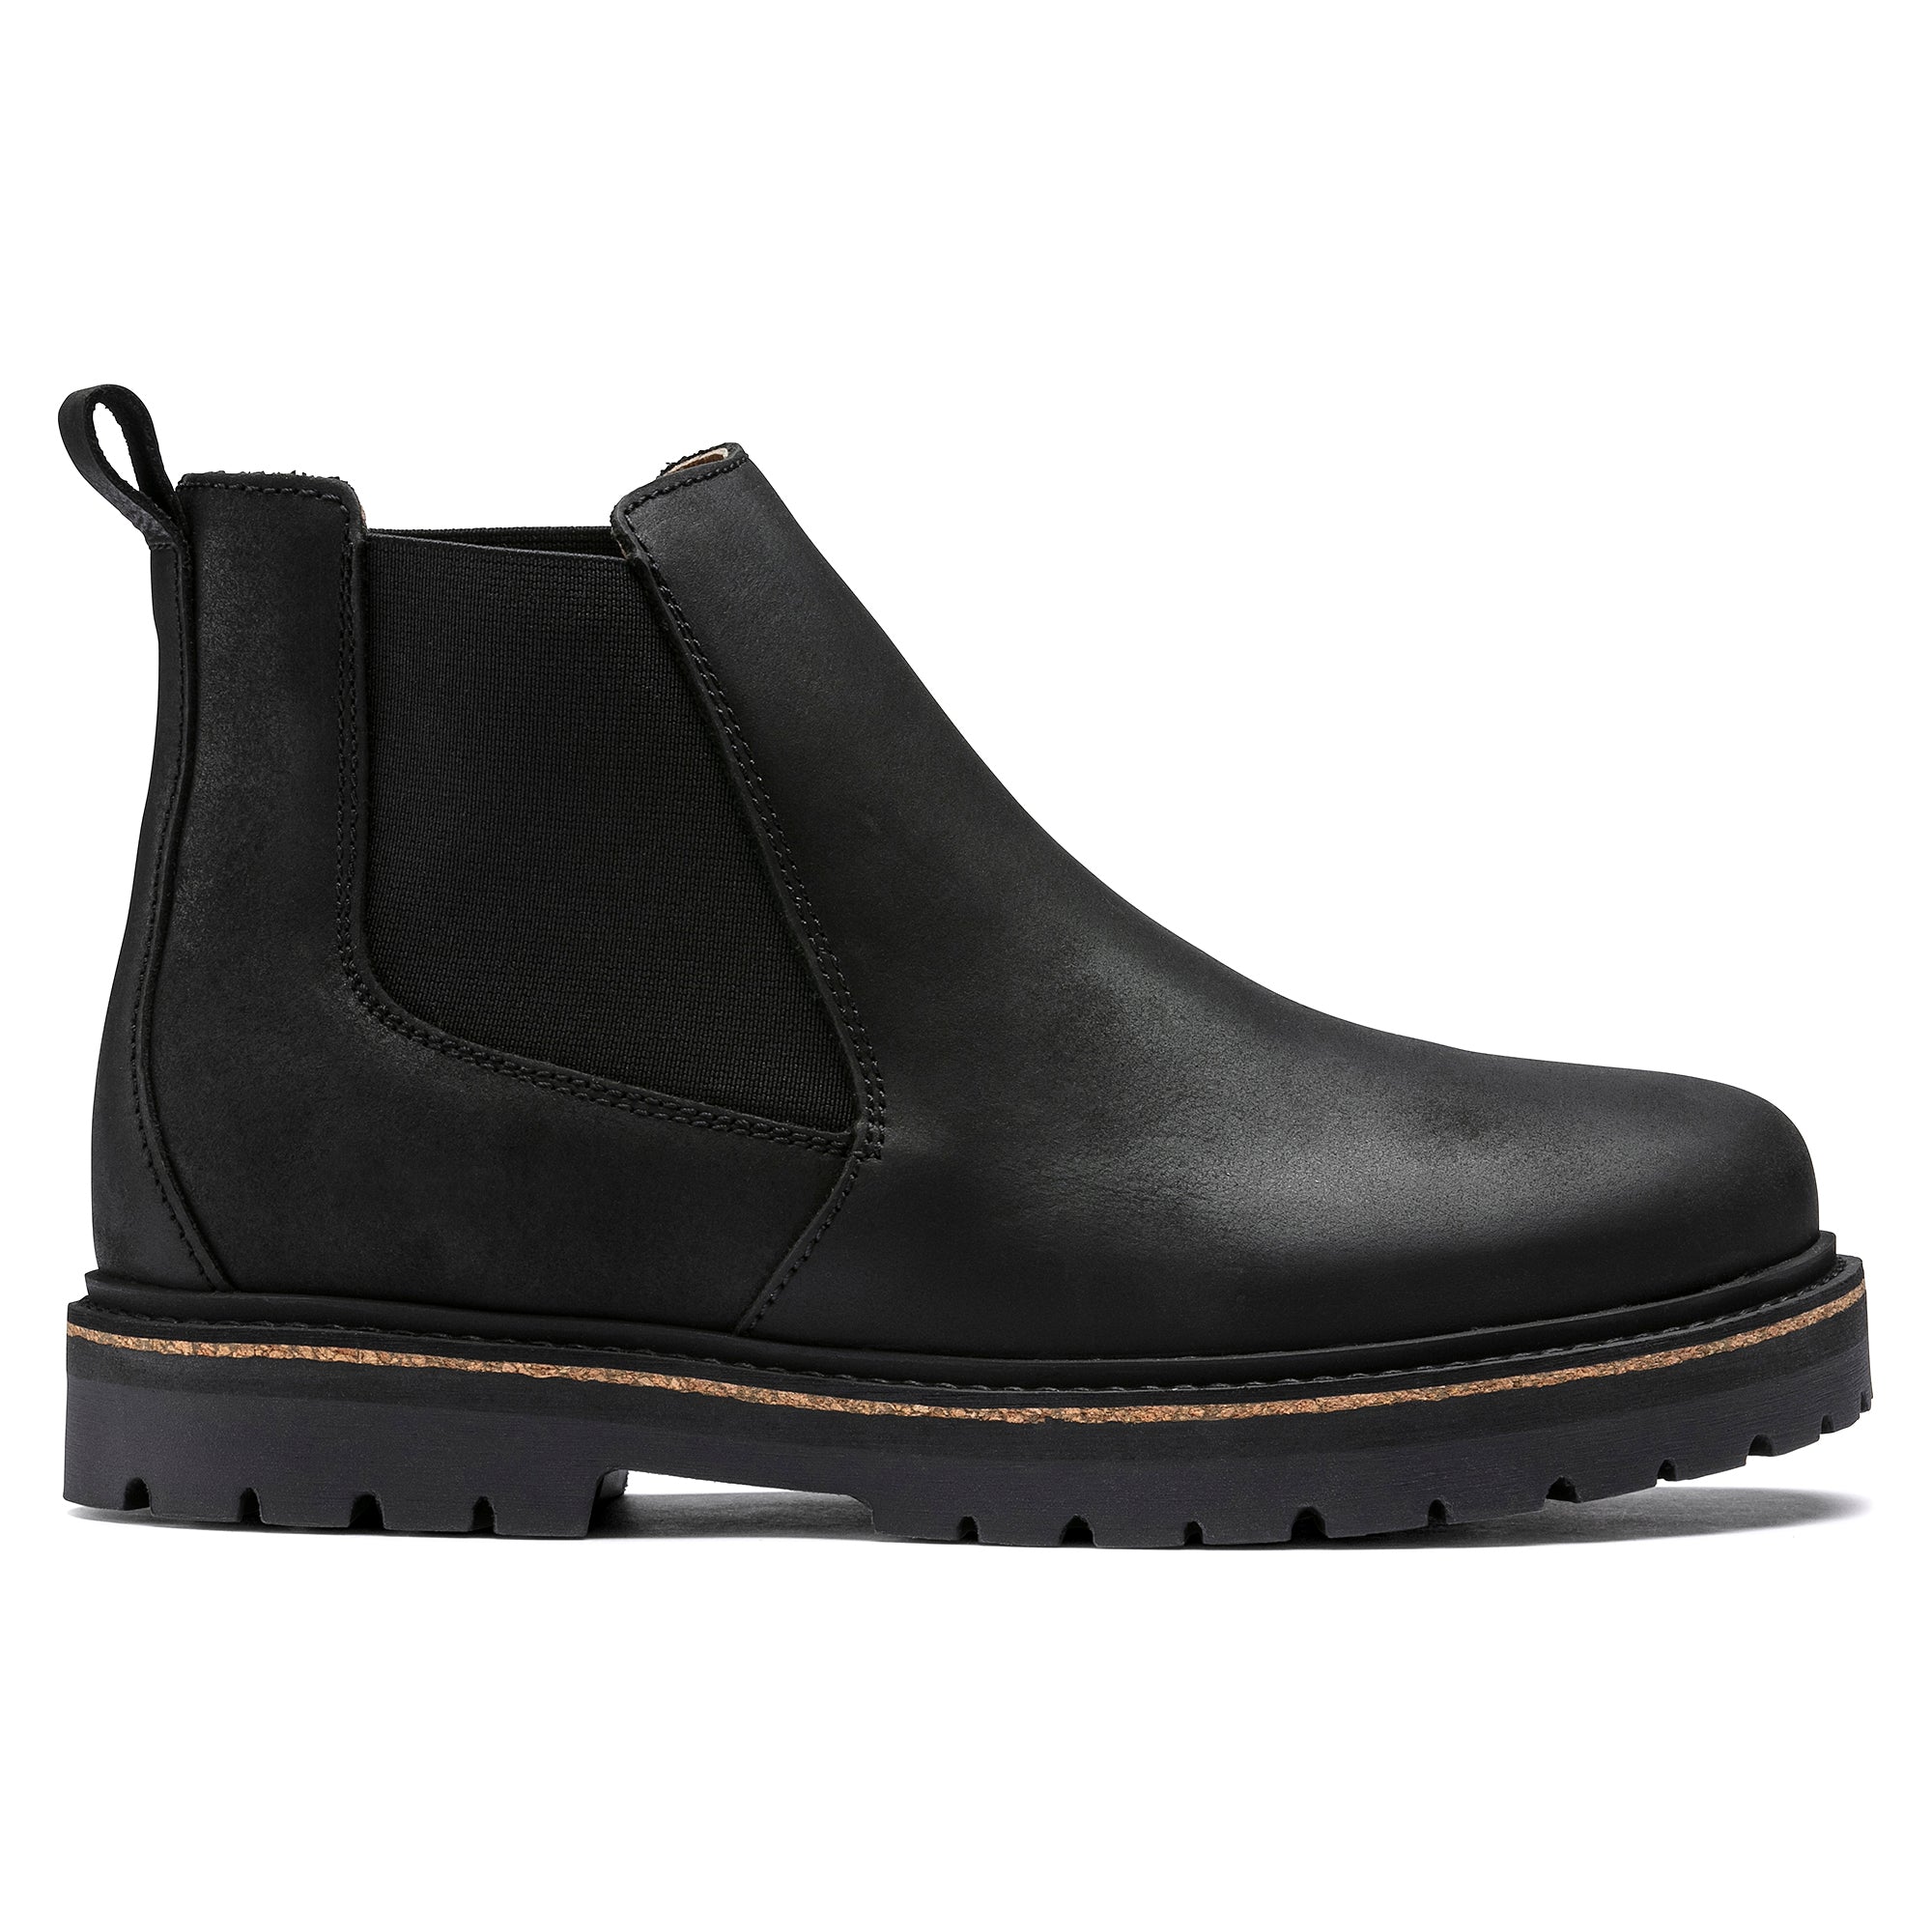 Birkenstock Stalon II 1017317 Women's Black Nubuck Leather Ankle Boots